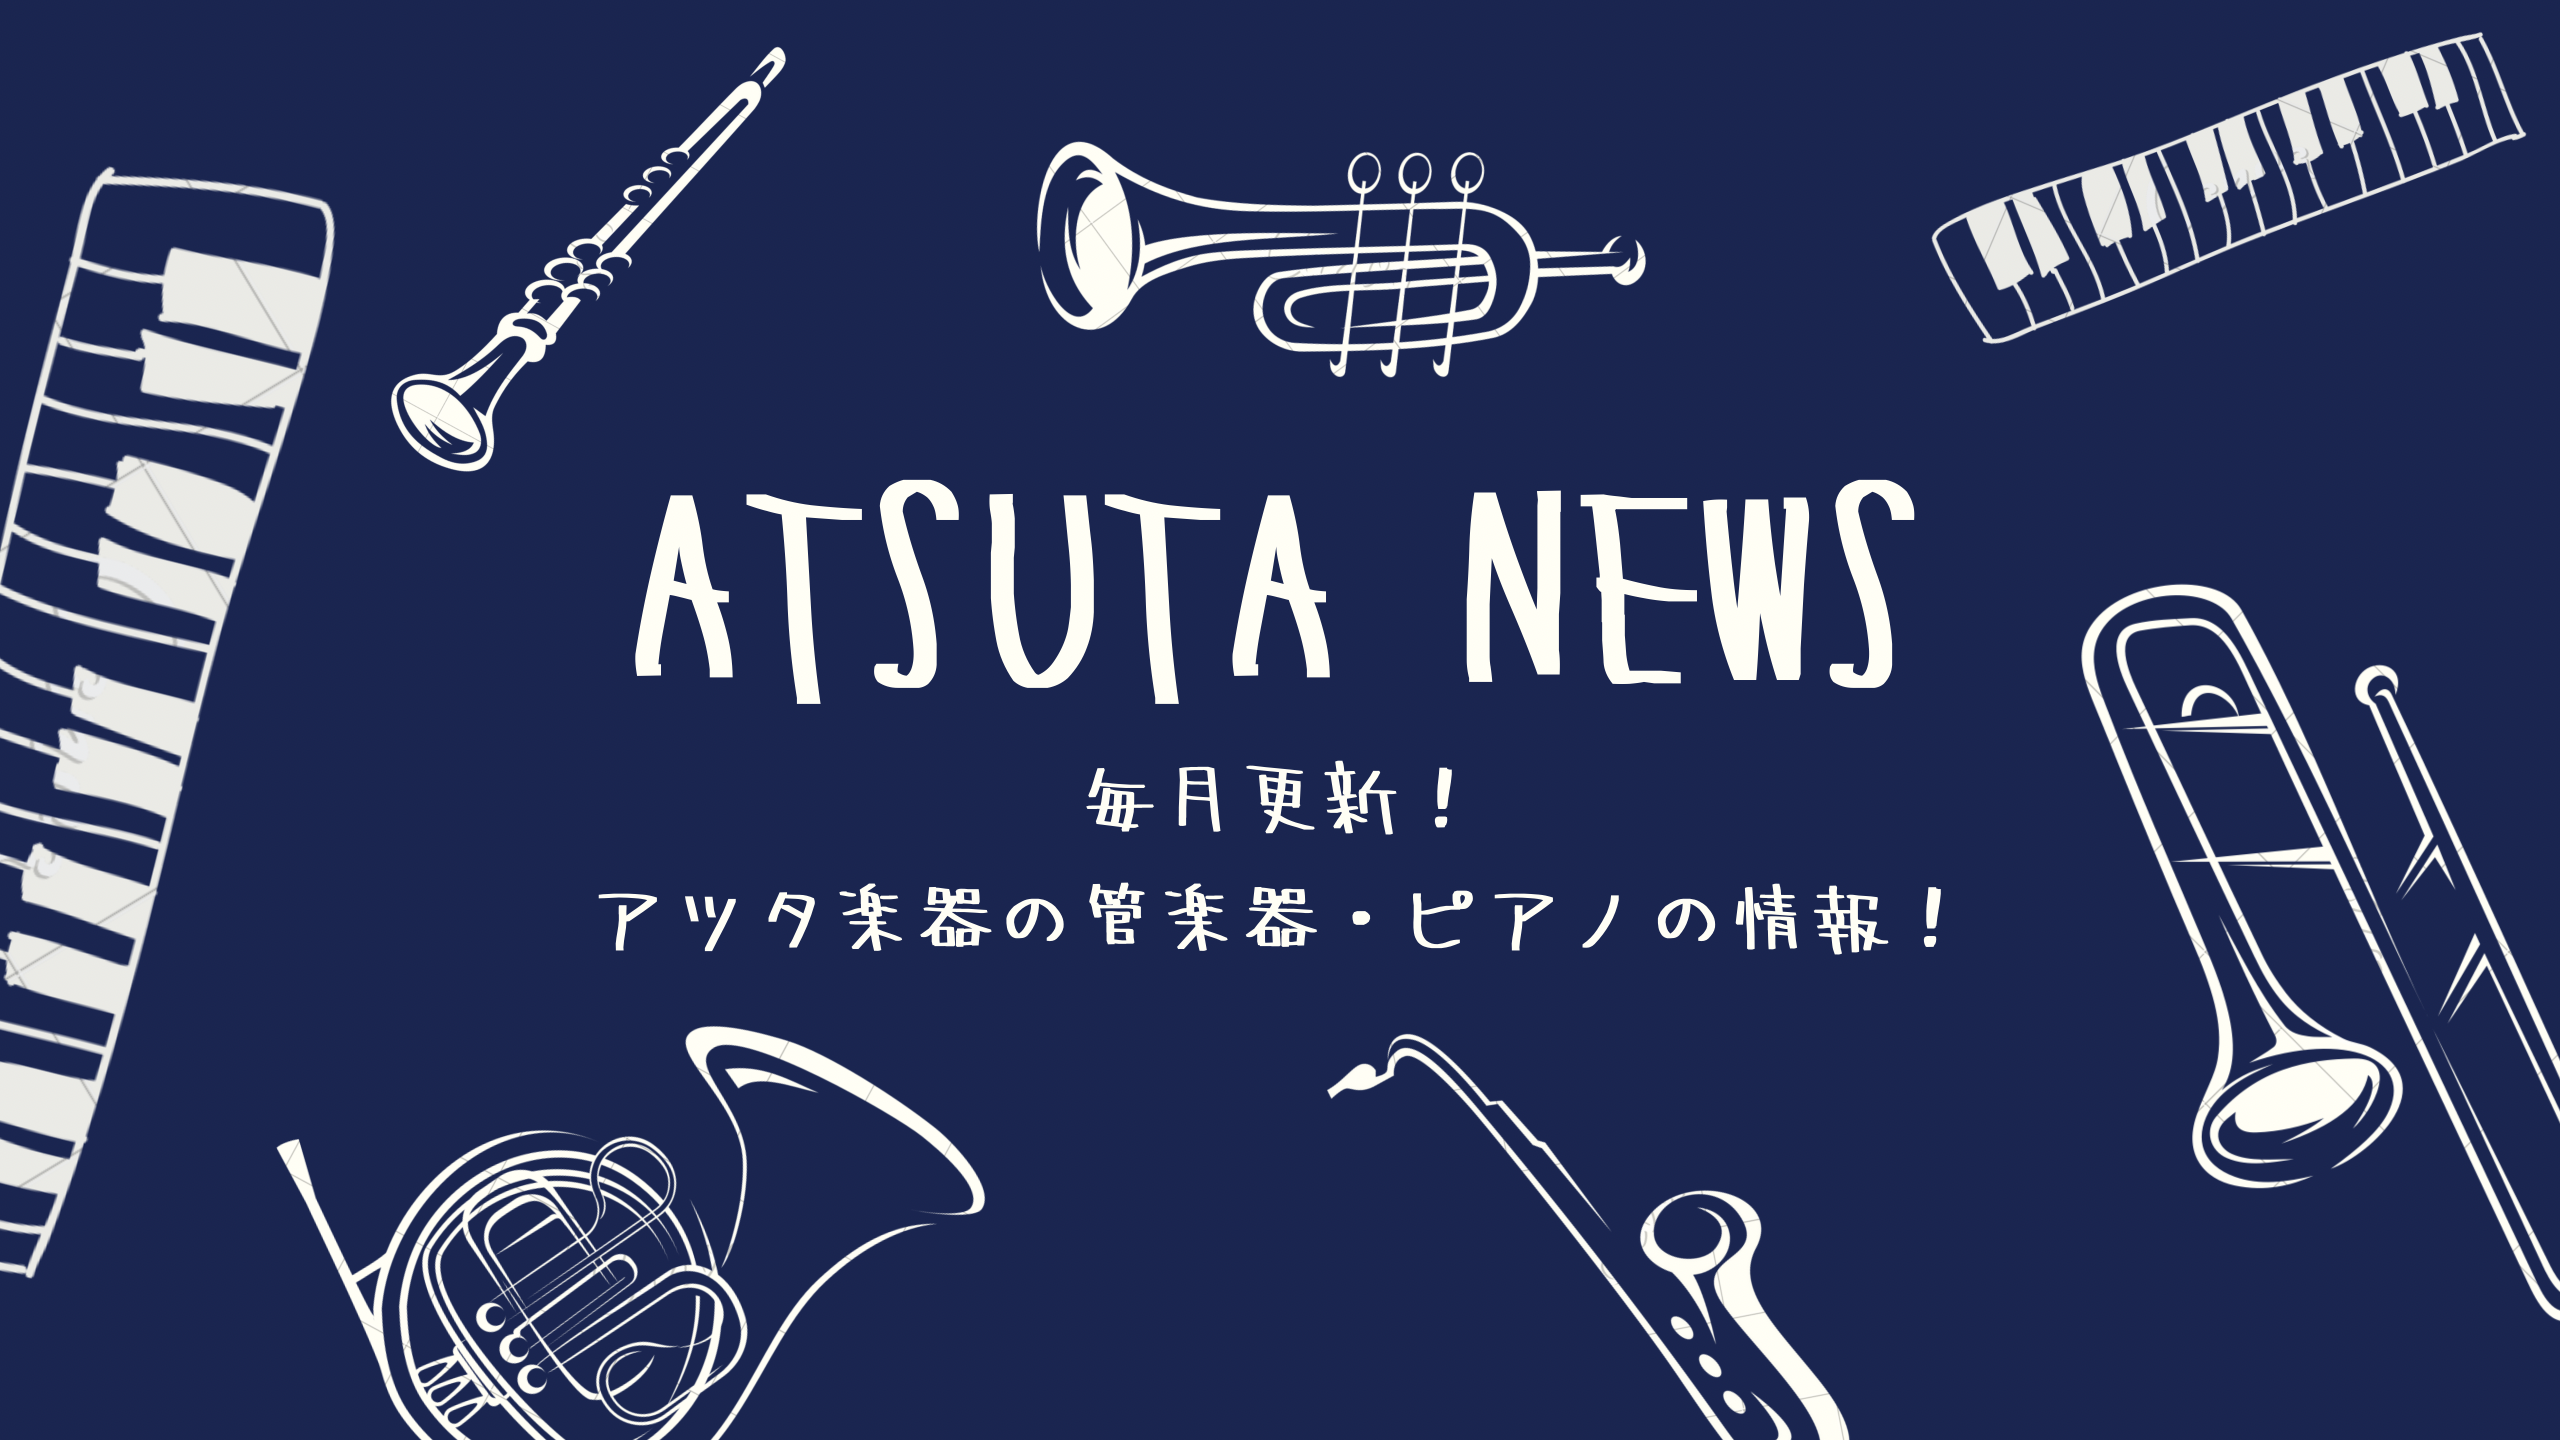 【ATSUTA NEWS Vol.9】